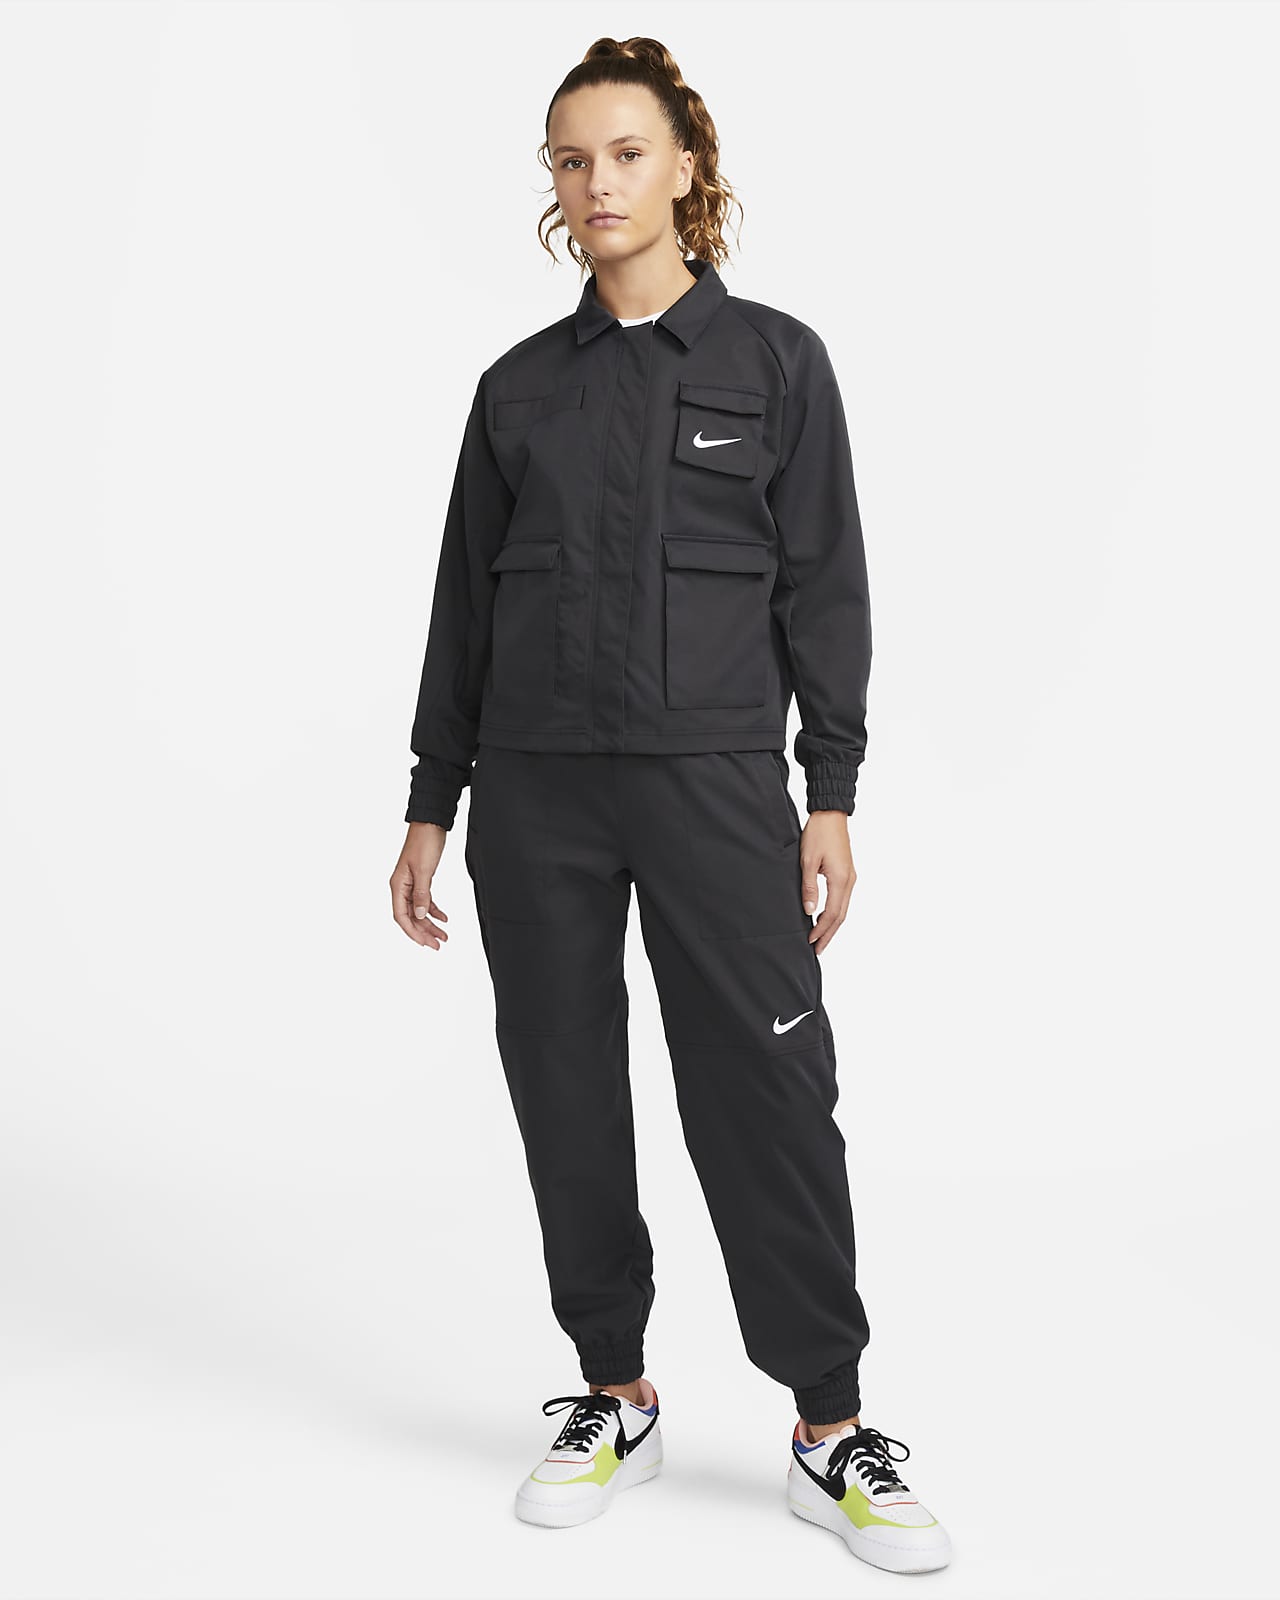 Sportswear Women's Woven Jacket. Nike.com